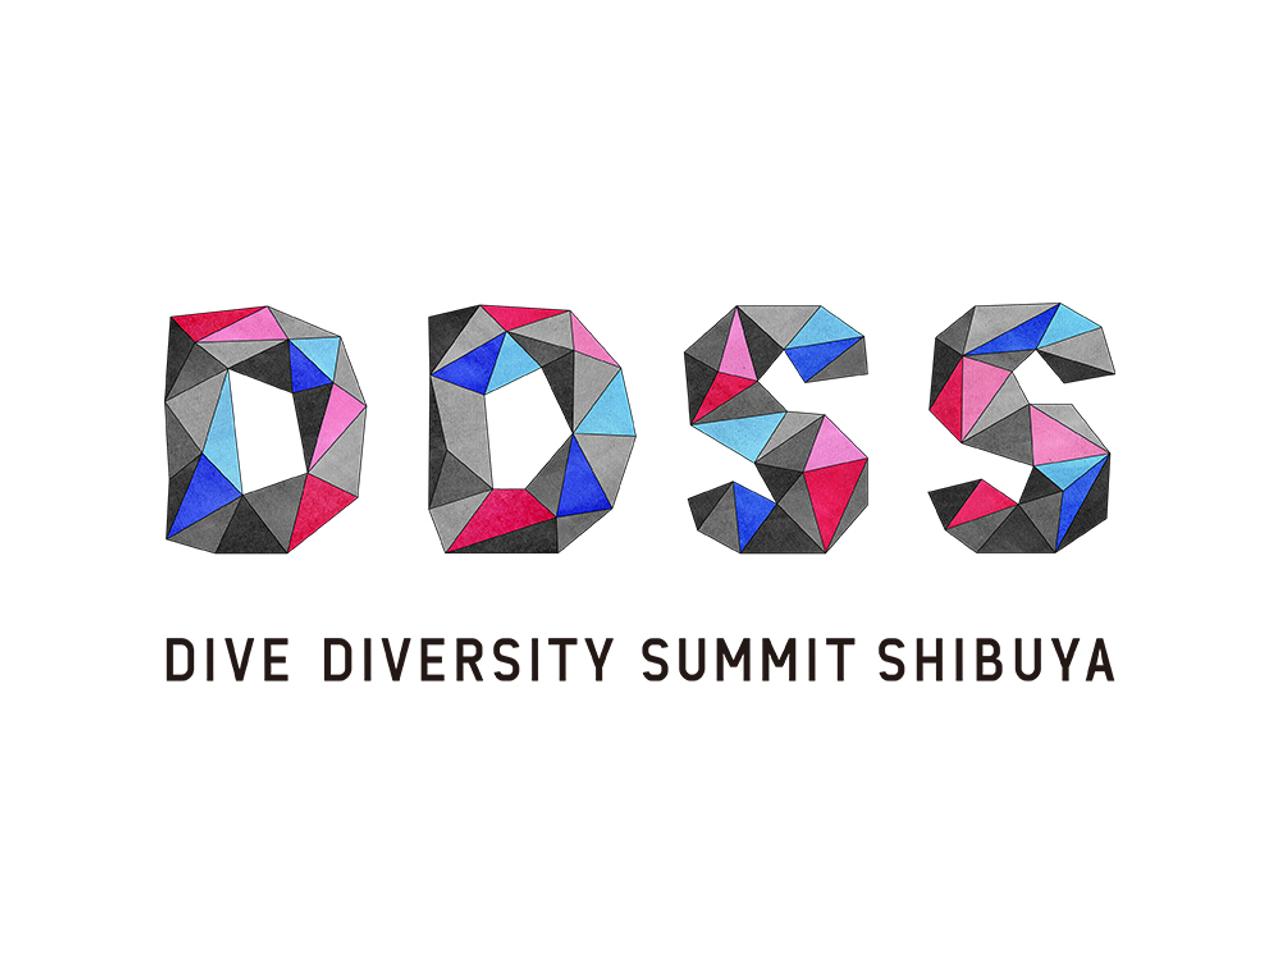 多様性が渋谷を変える。ソリューション&クリエーションサミット｢DIVE DIVERSITY SUMMIT SHIBUYA 2017｣が開催